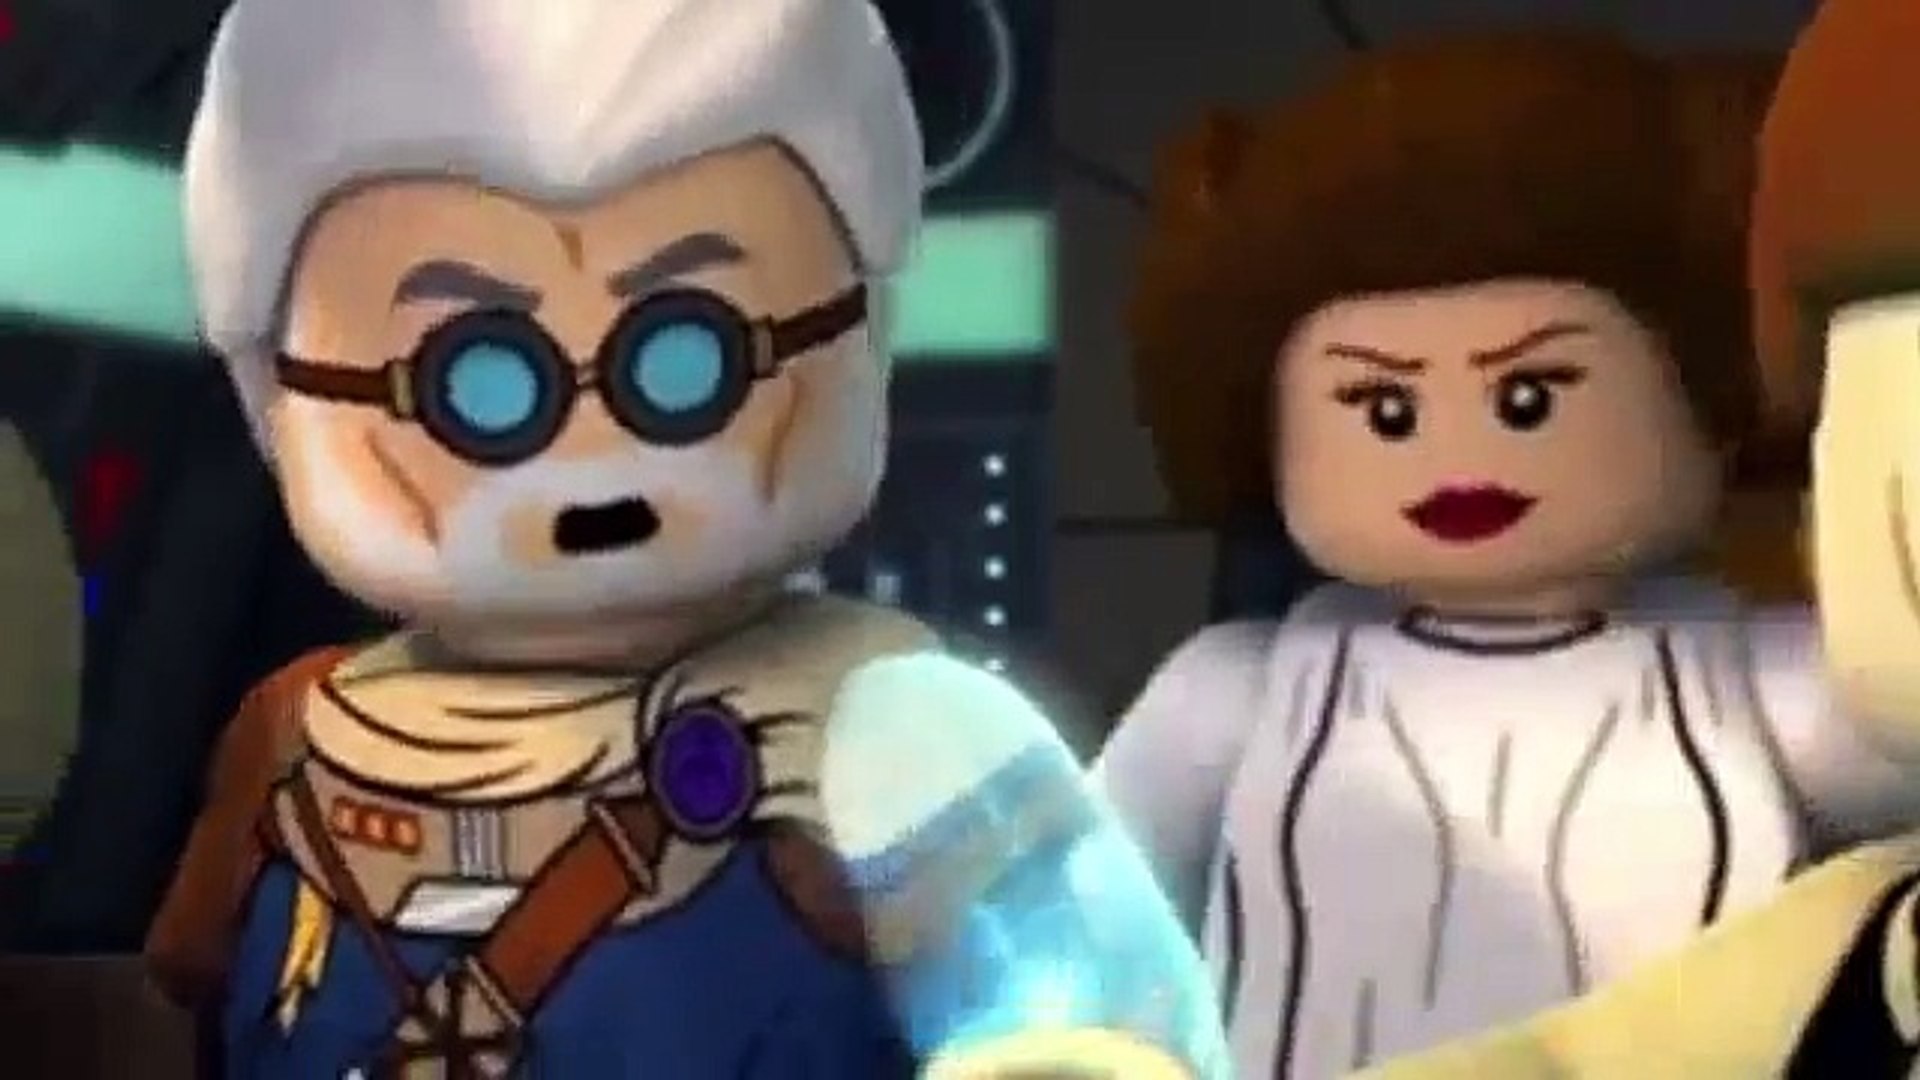 LEGO Star Wars Staffel 2 Folge 3 - video Dailymotion